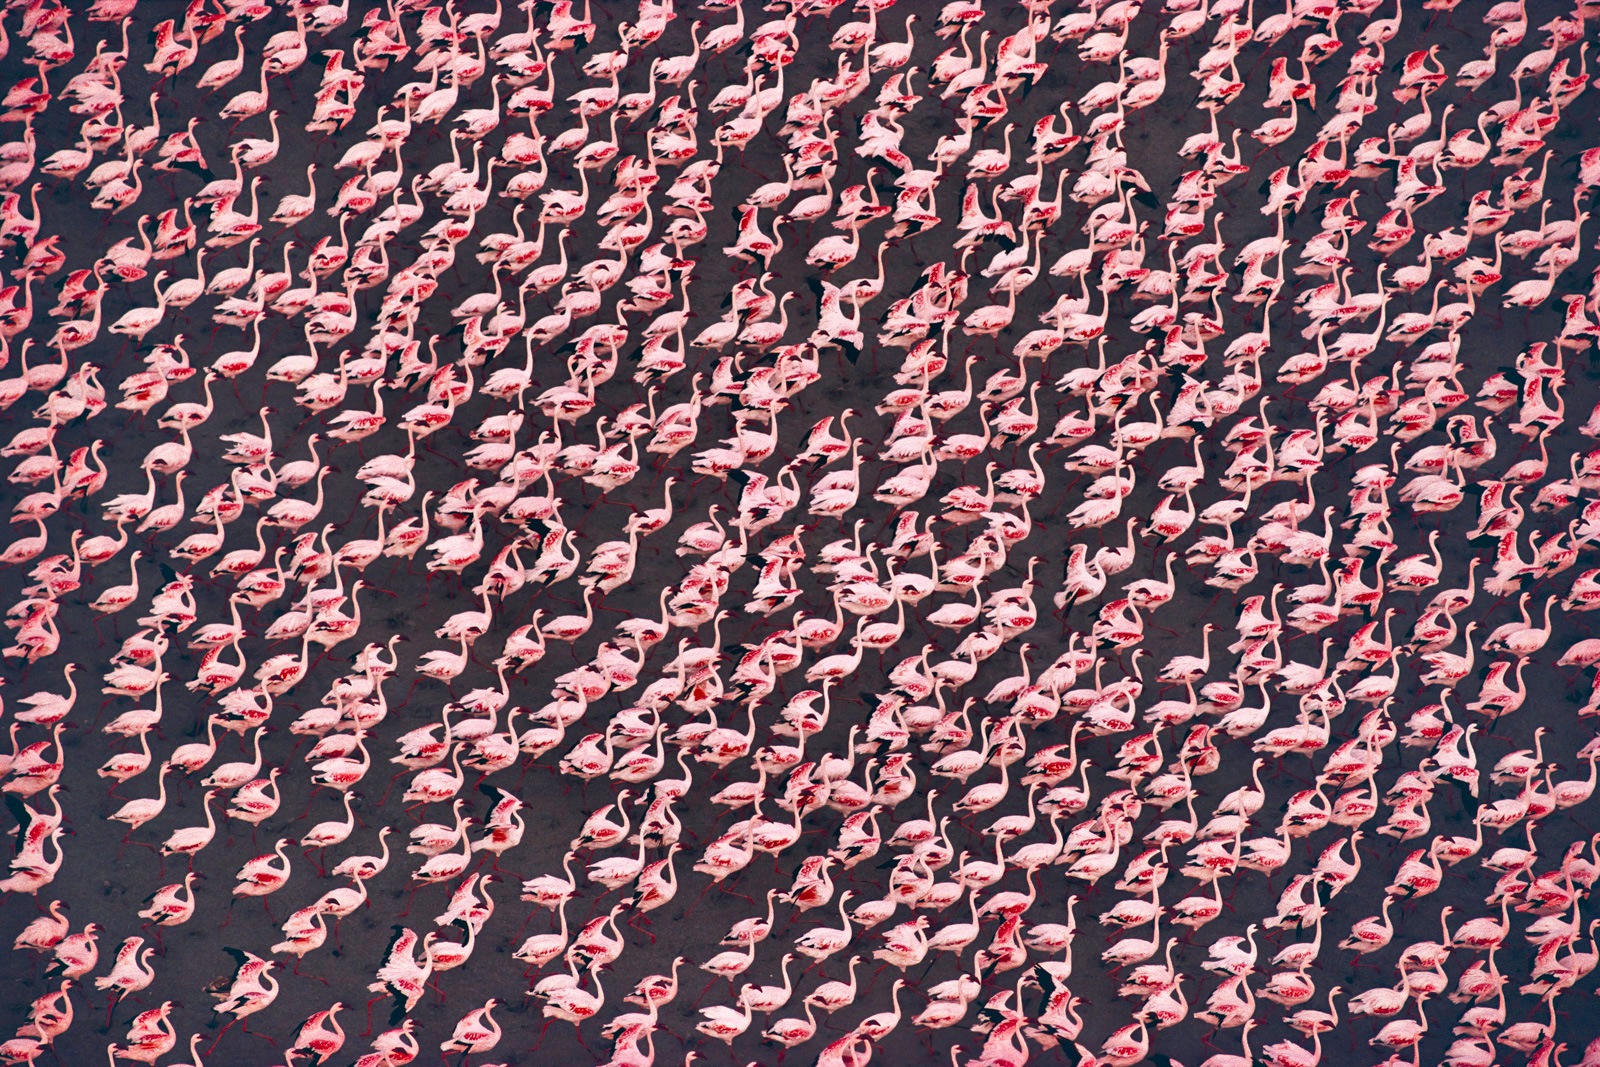 Greater flamingos, Makgadikgadi Pans, Botswana